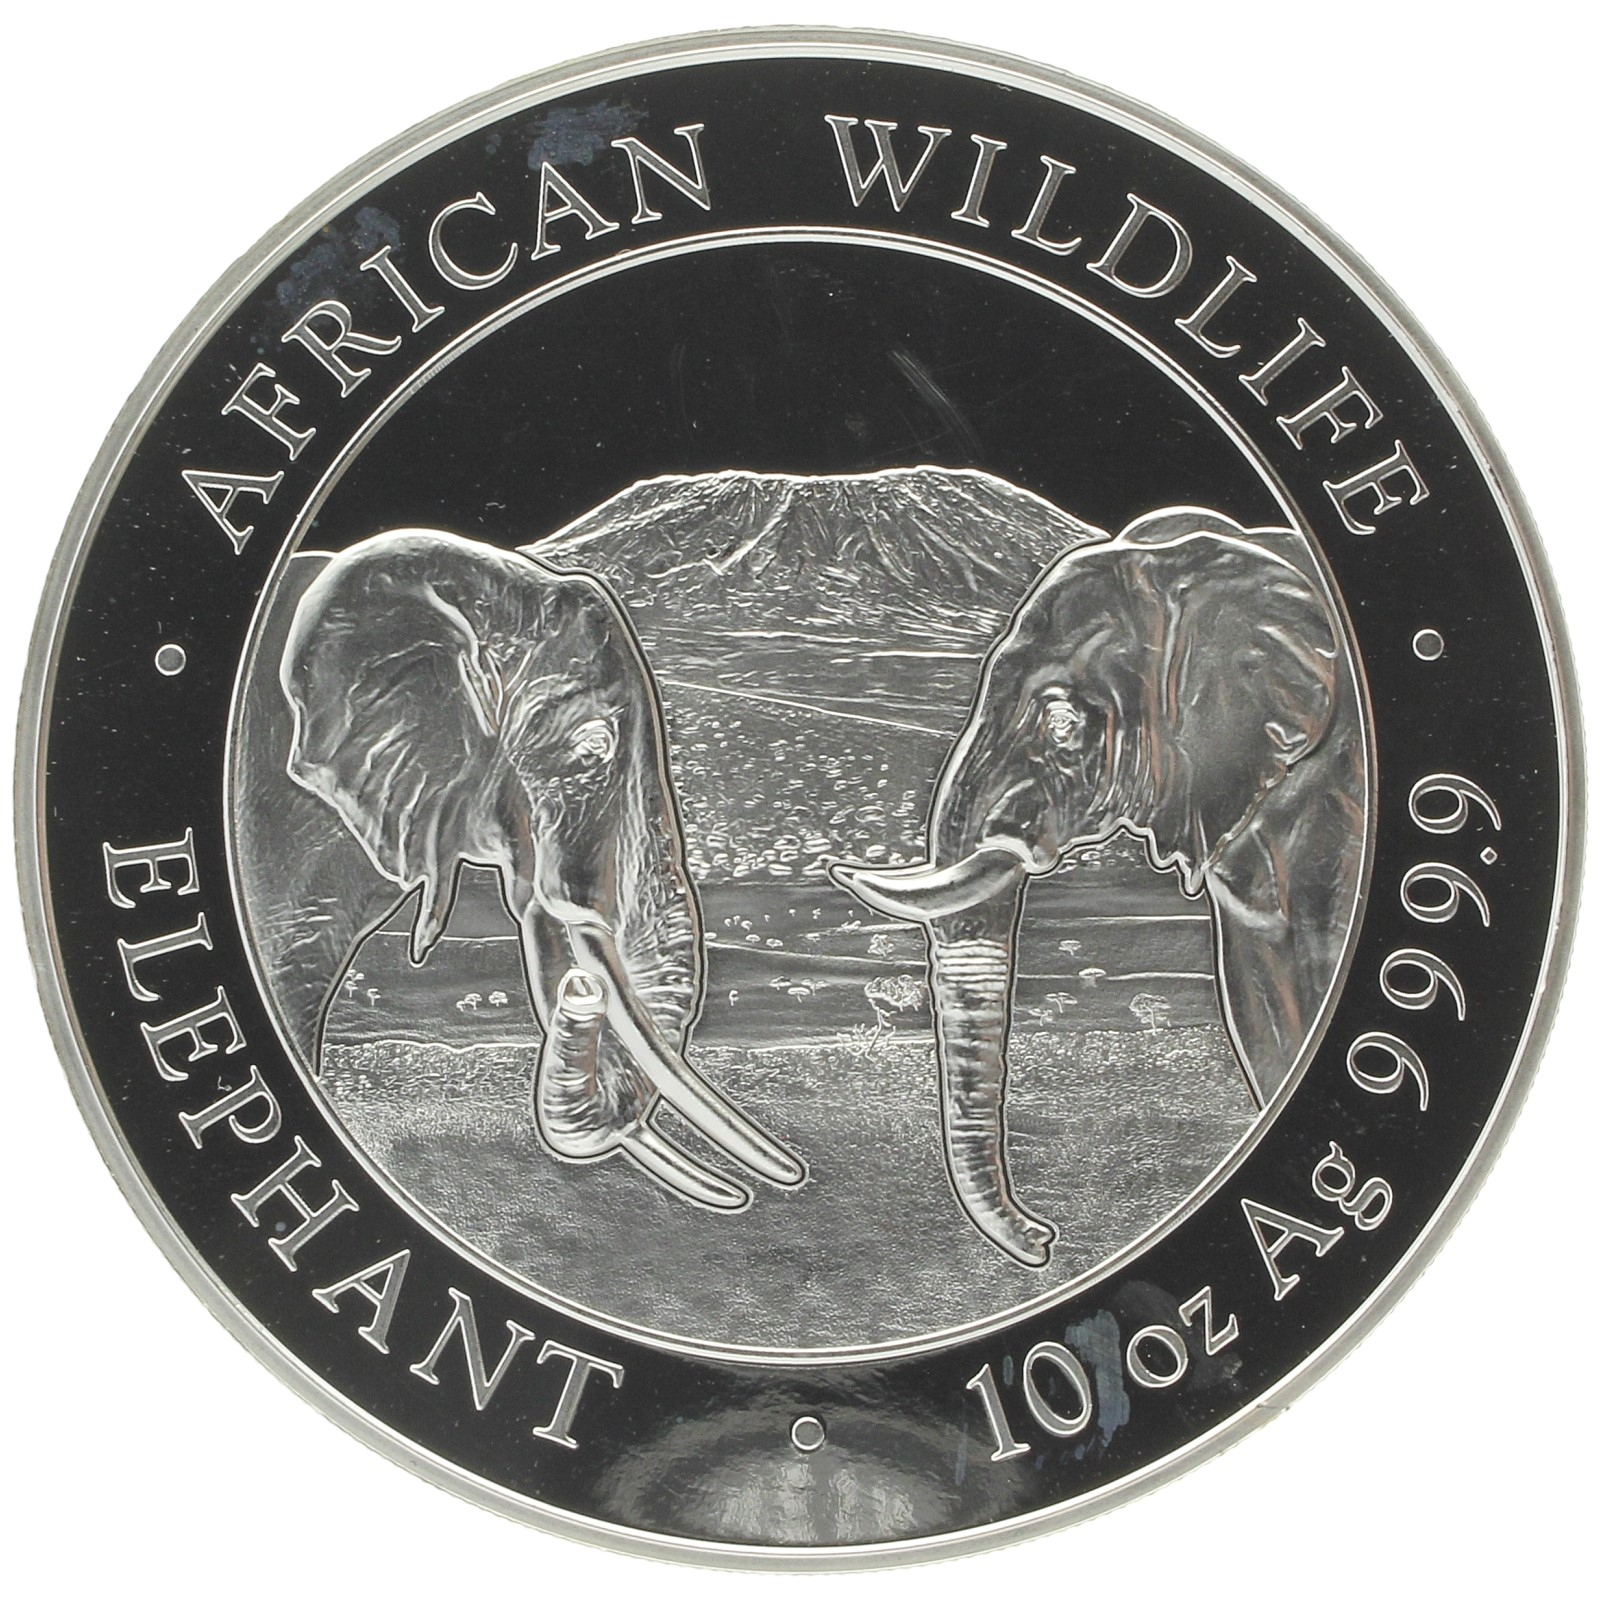 Somalia - 1000 shillings - 2020 - Elephant - 10oz